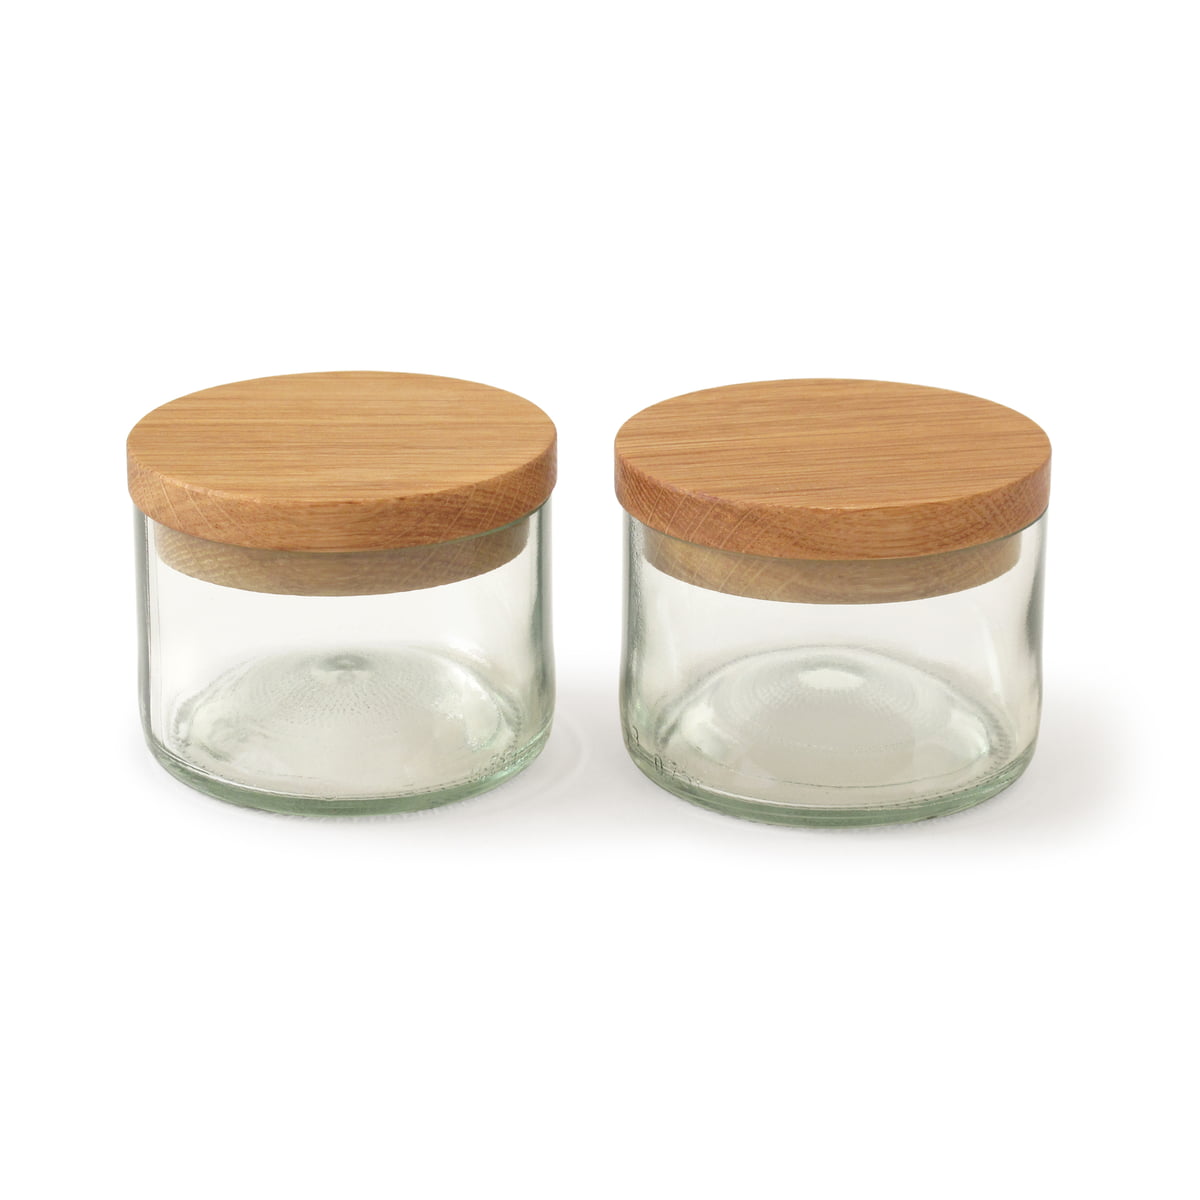 Salt & Spice Jars by side by side